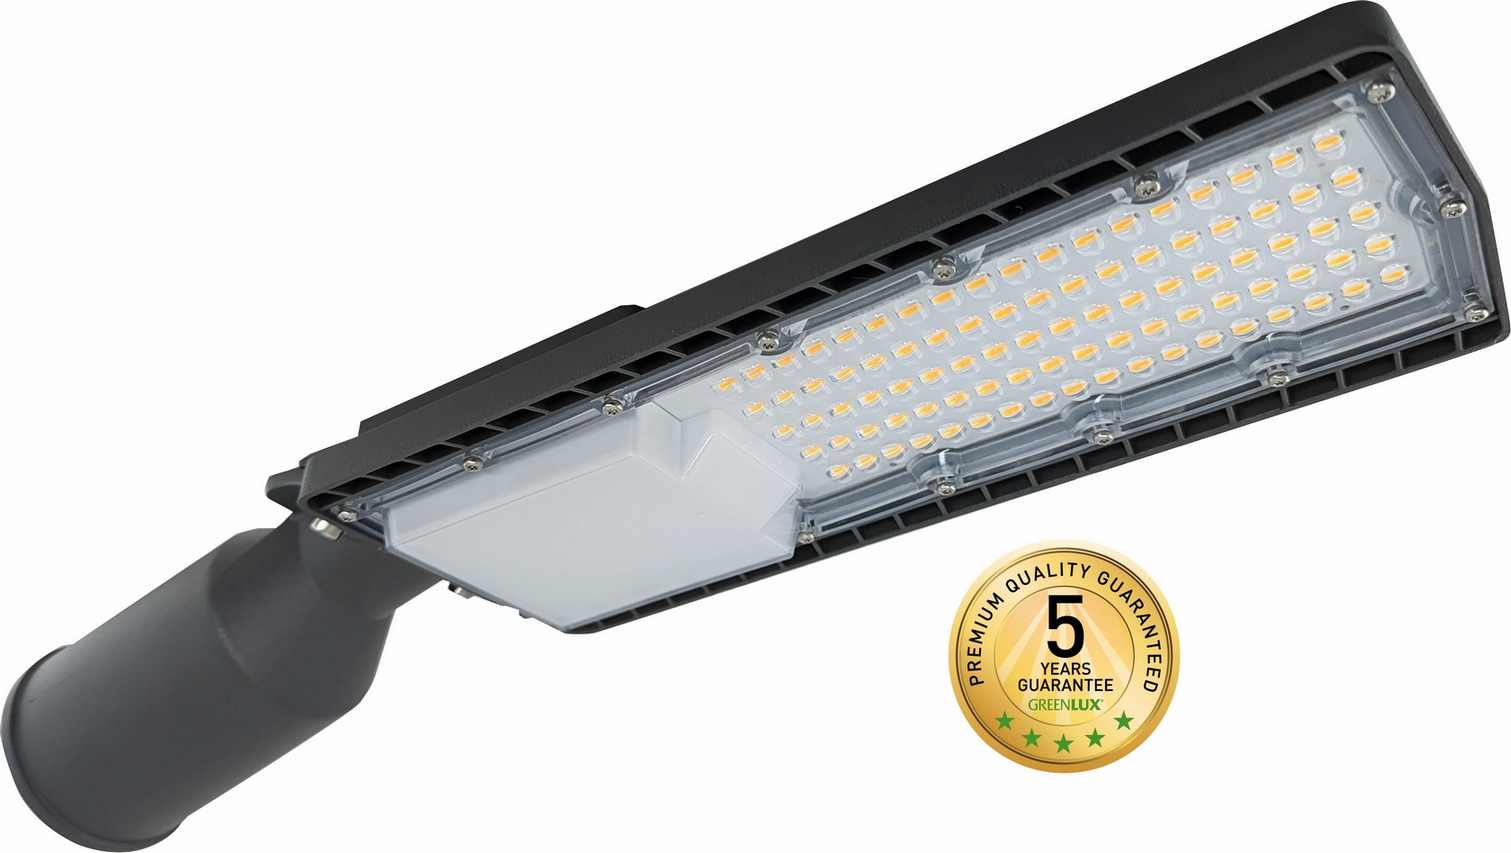 LED poulièní svítidlo BOSTON Premium 35W WW, 2700K, 4900lm, IP65, Greenlux GXSL010 - zvìtšit obrázek